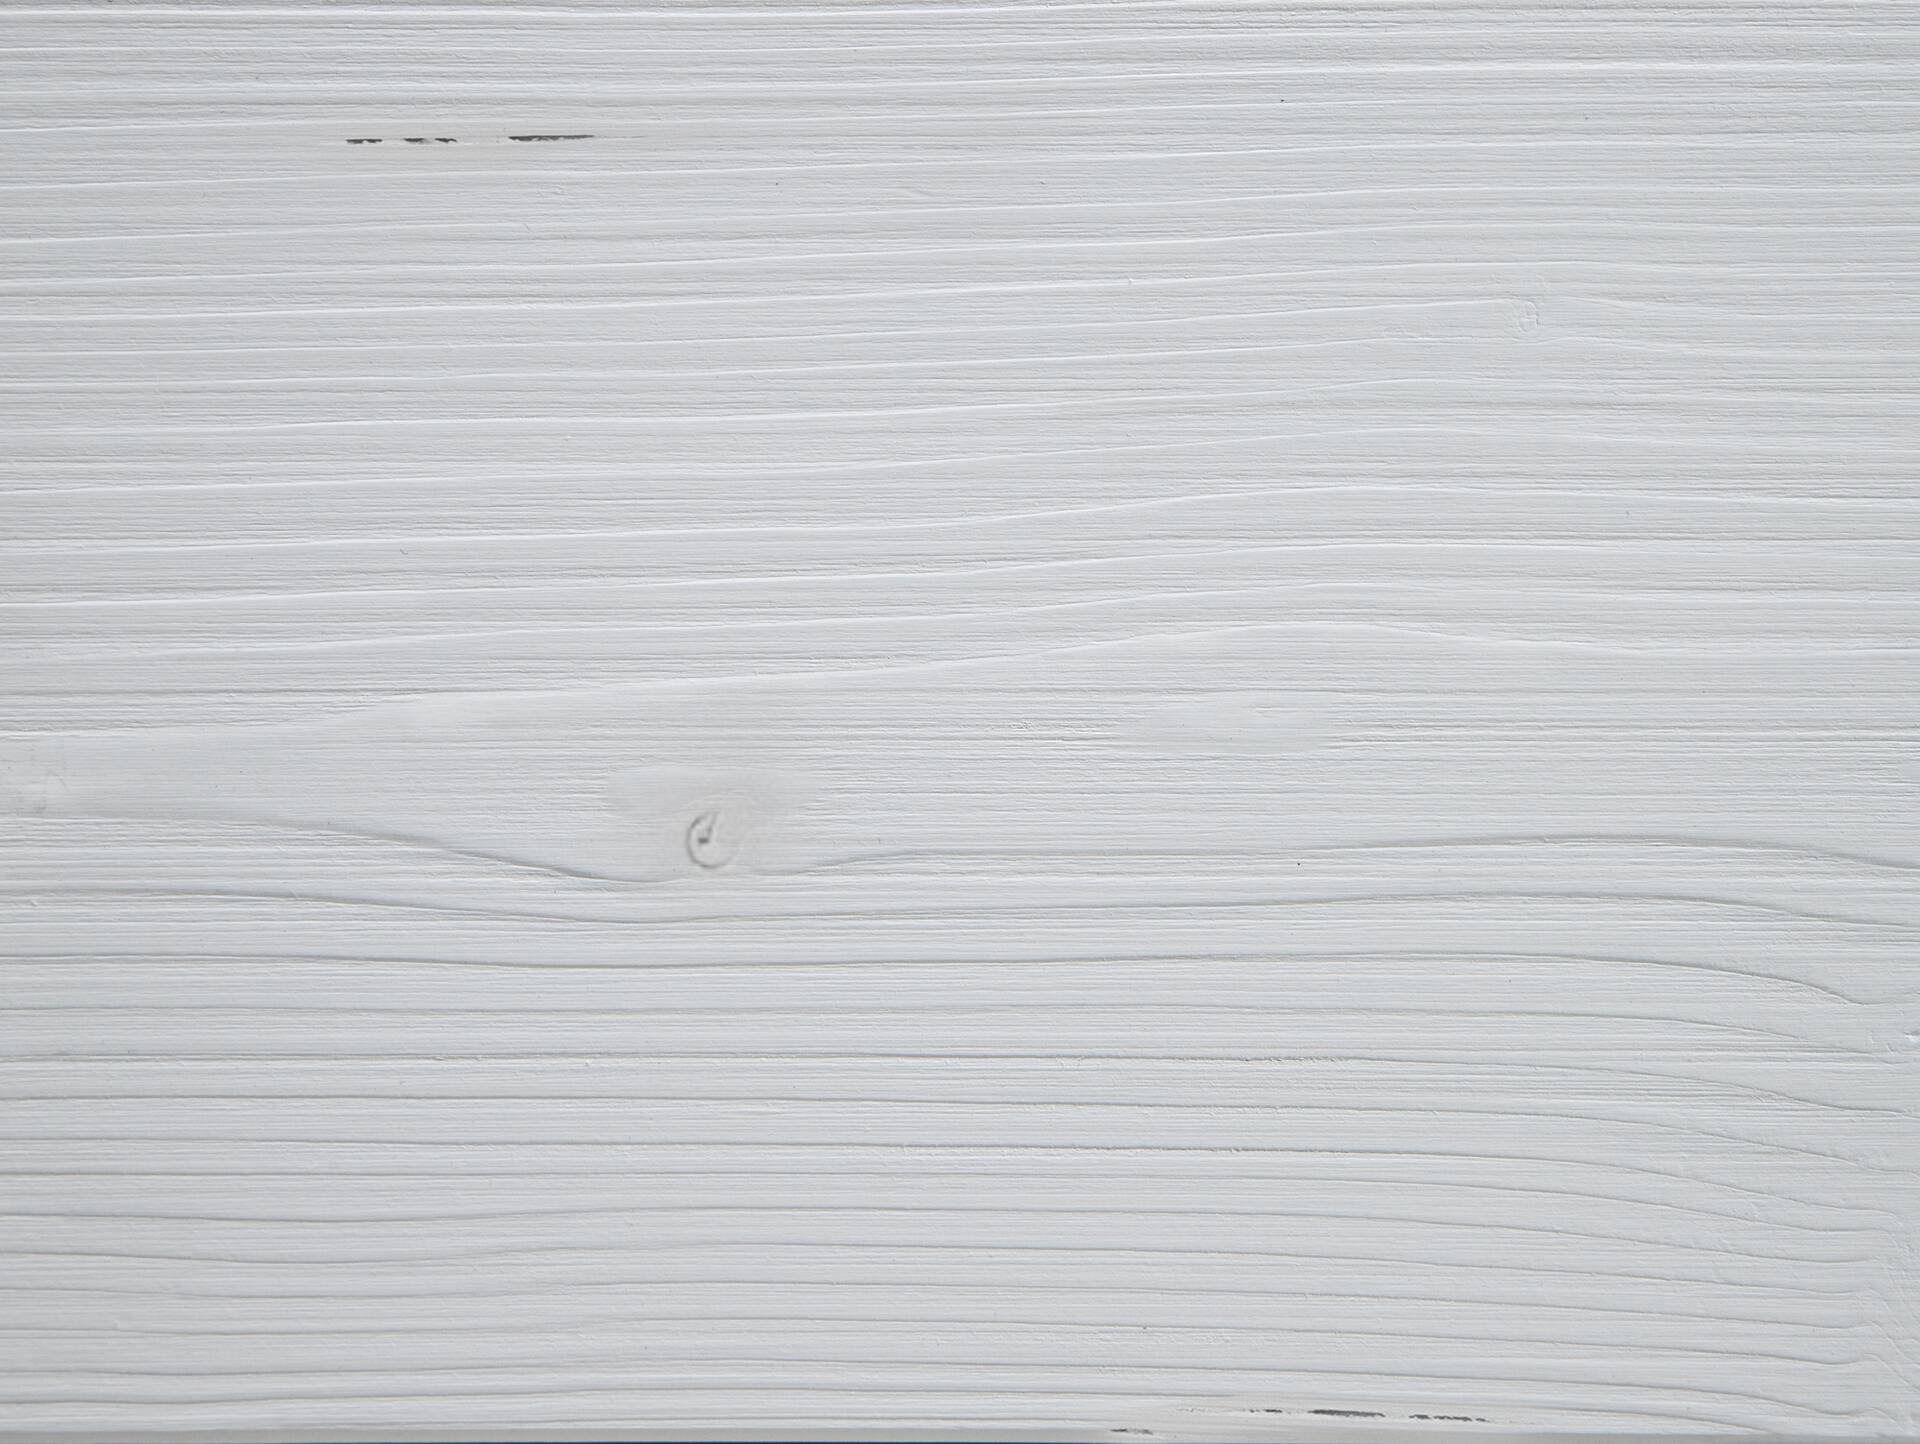 LUKY Kufenbett ohne Kopfteil, Material Massivholz, Fichte weiss/Kufen schwarz 90 x 200 cm | ohne Kopfteil